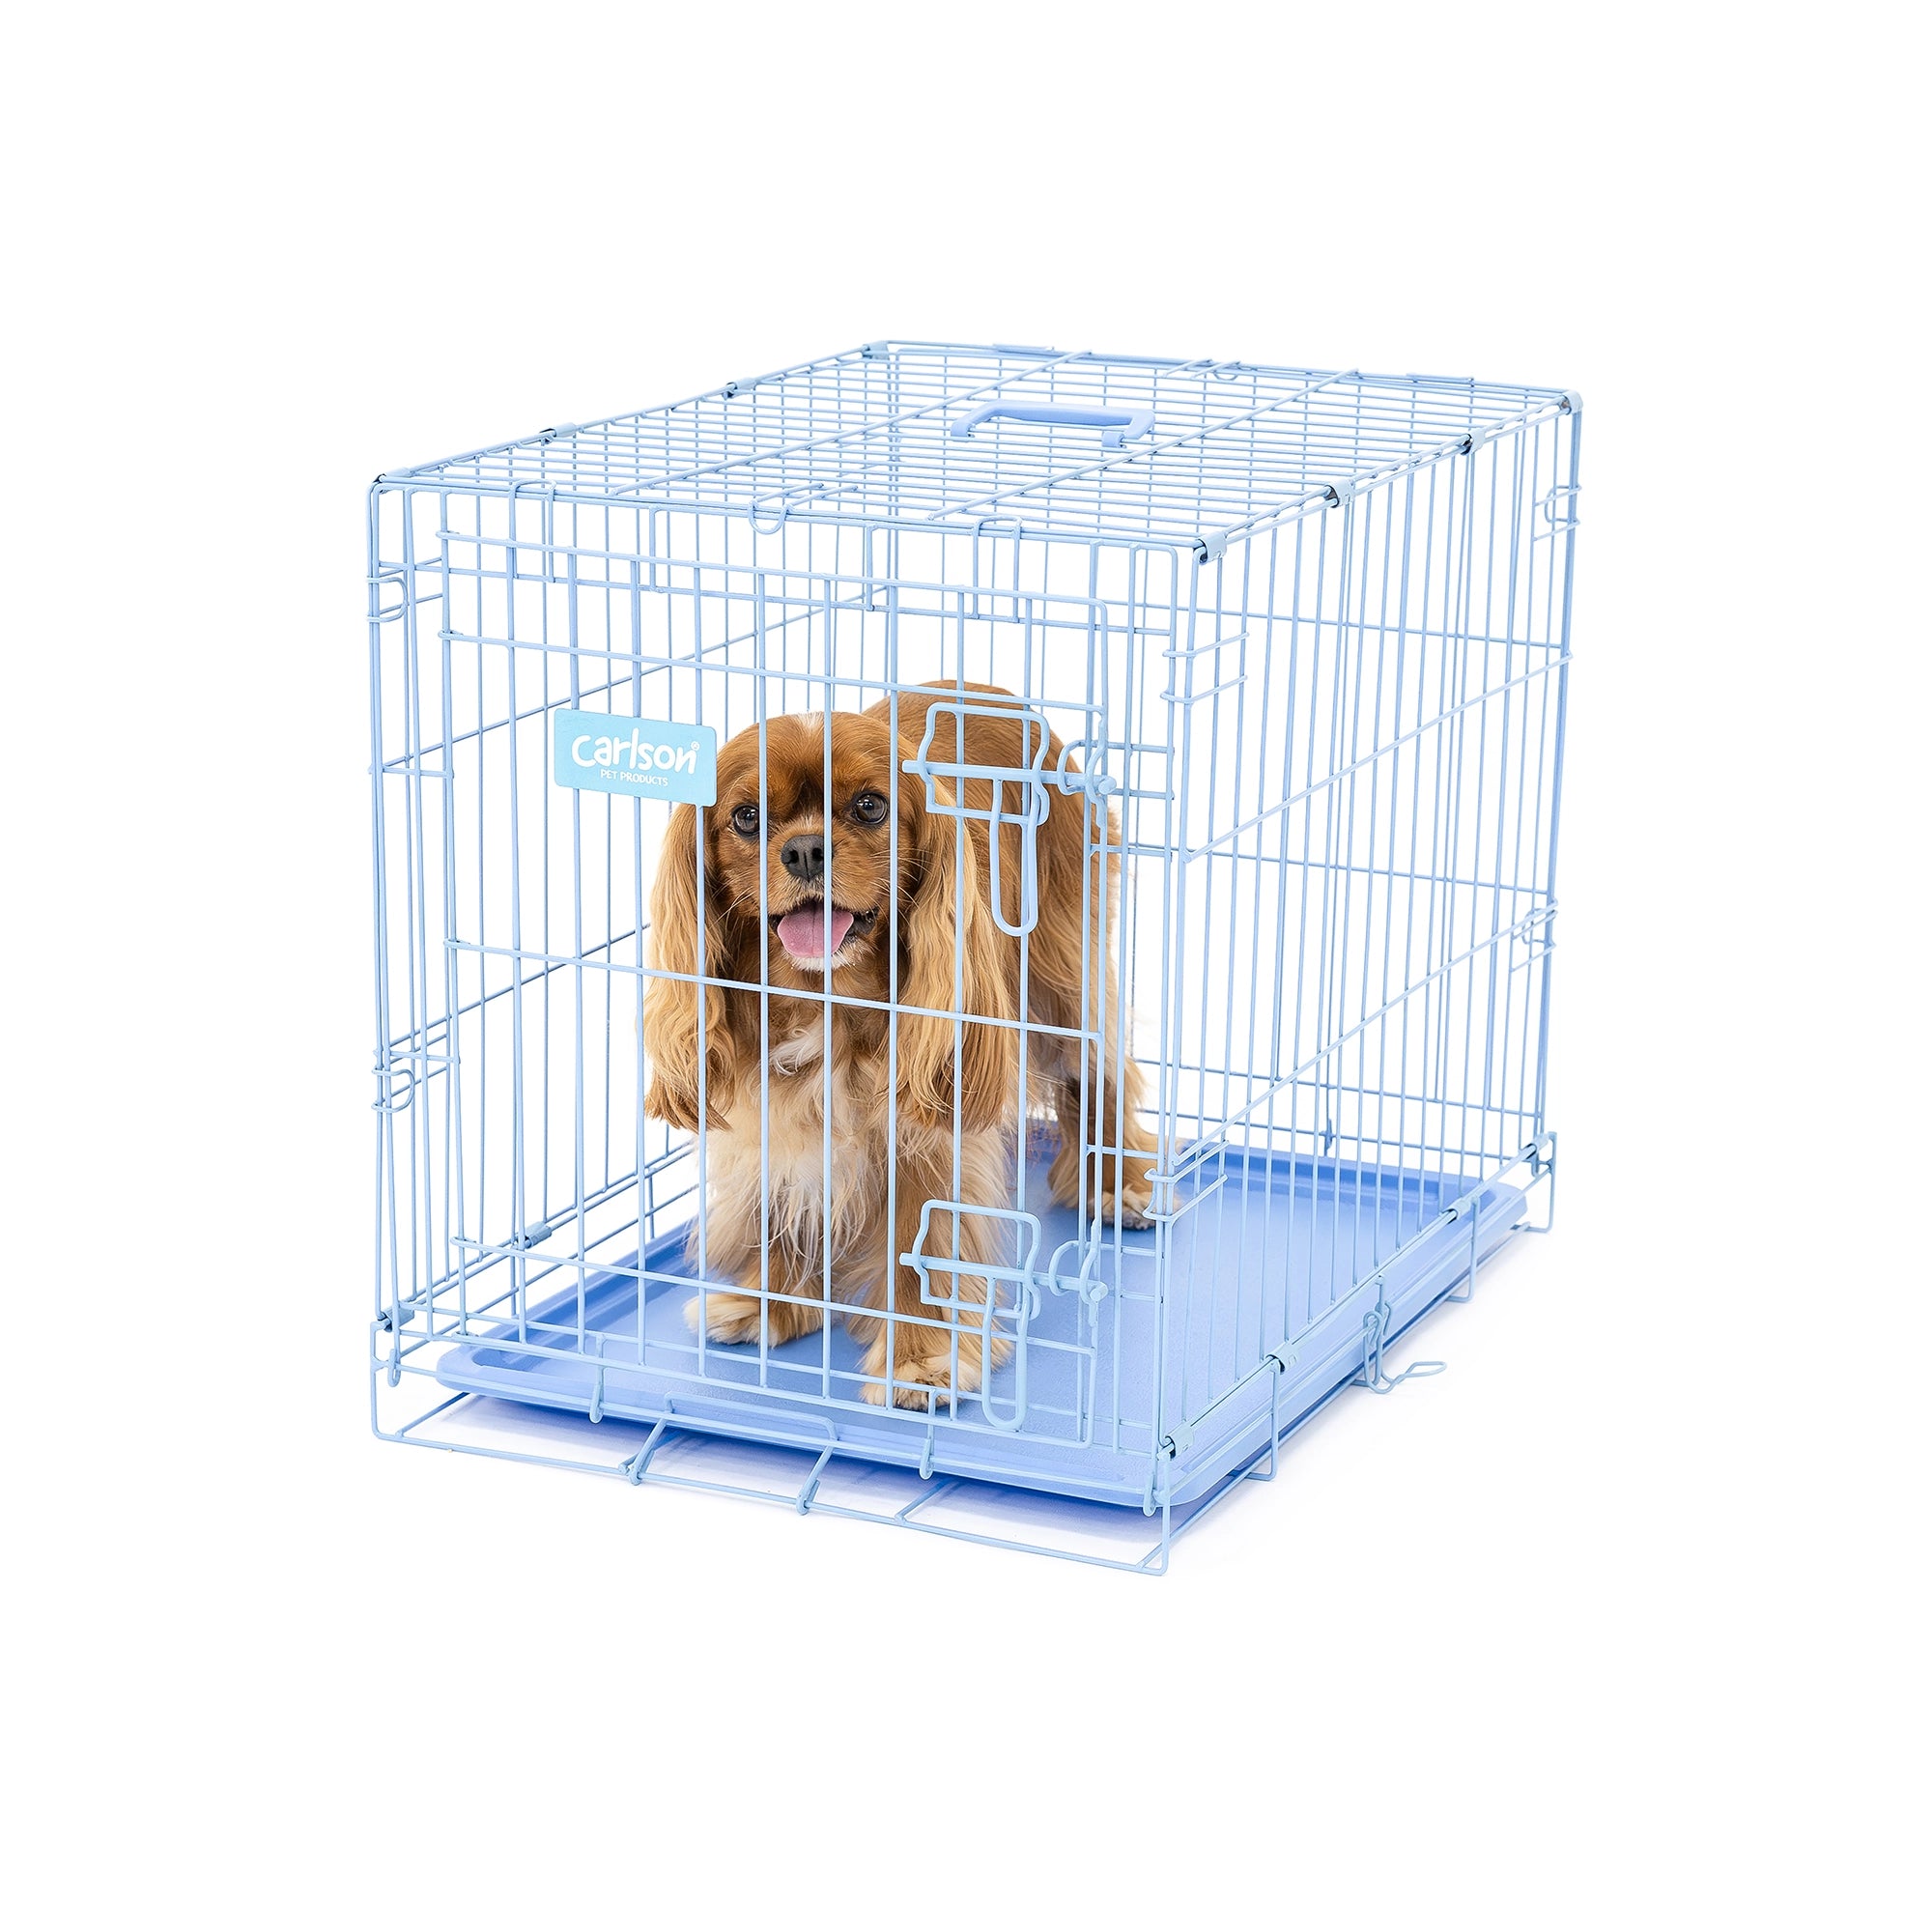 Small Single-Door Dog Crate